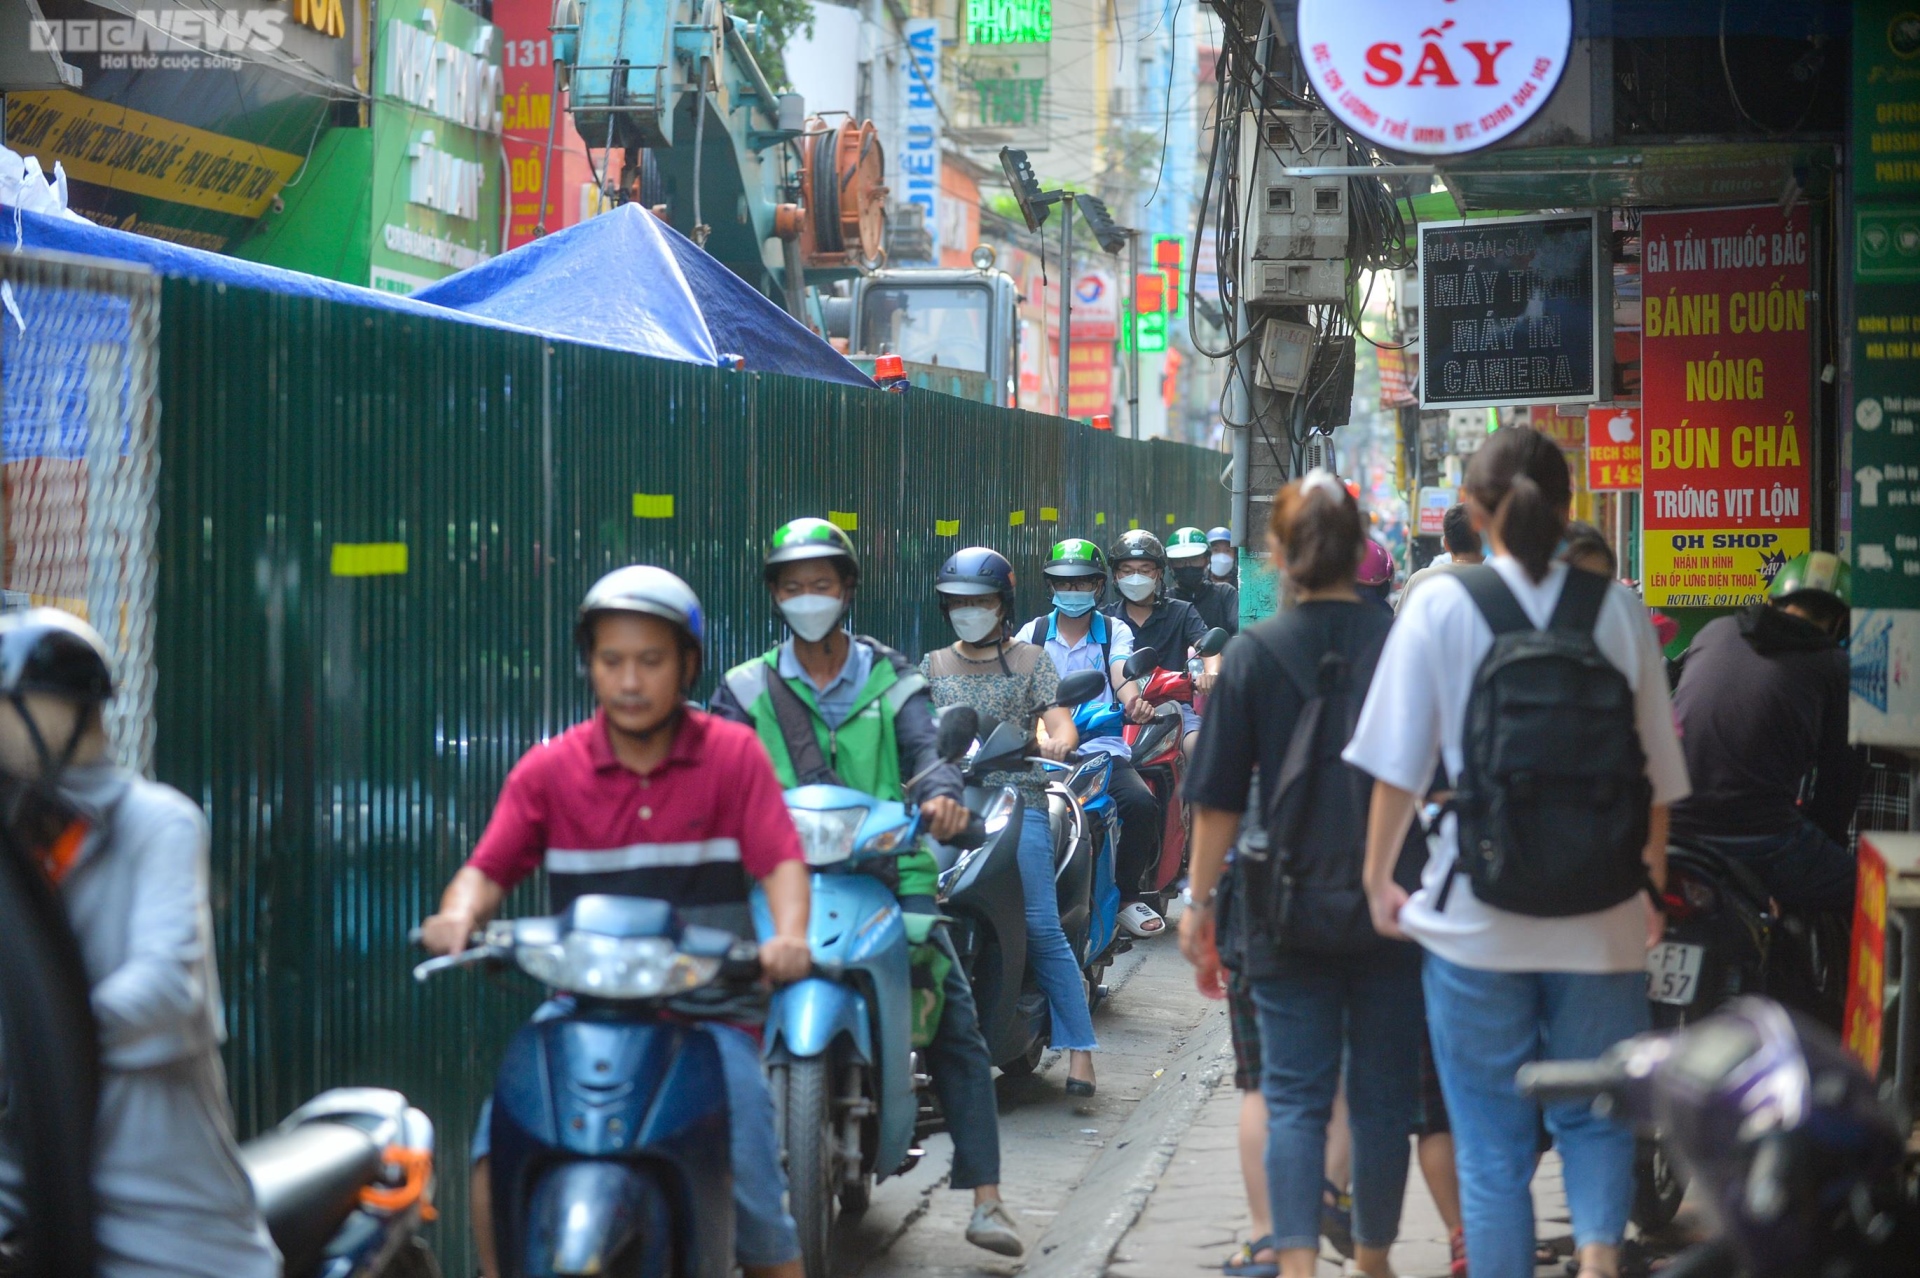 Rào tôn chắn gần hết lòng đường ở Hà Nội, dân khổ sở luồn lách đi qua - Ảnh 4.